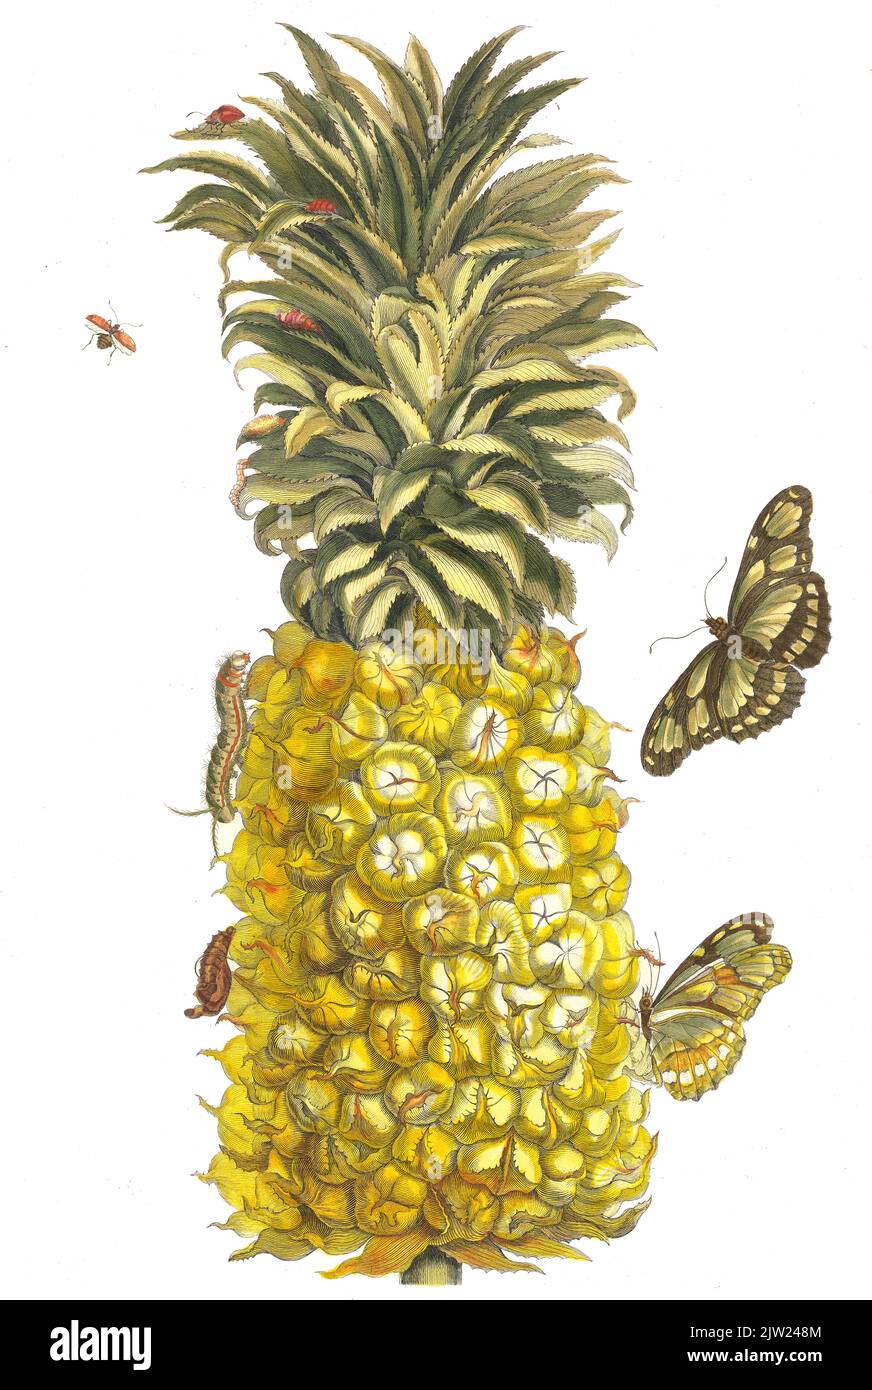 Maria Sibylla Merian - Ananas - 1705 - Ananas mur Stockfoto